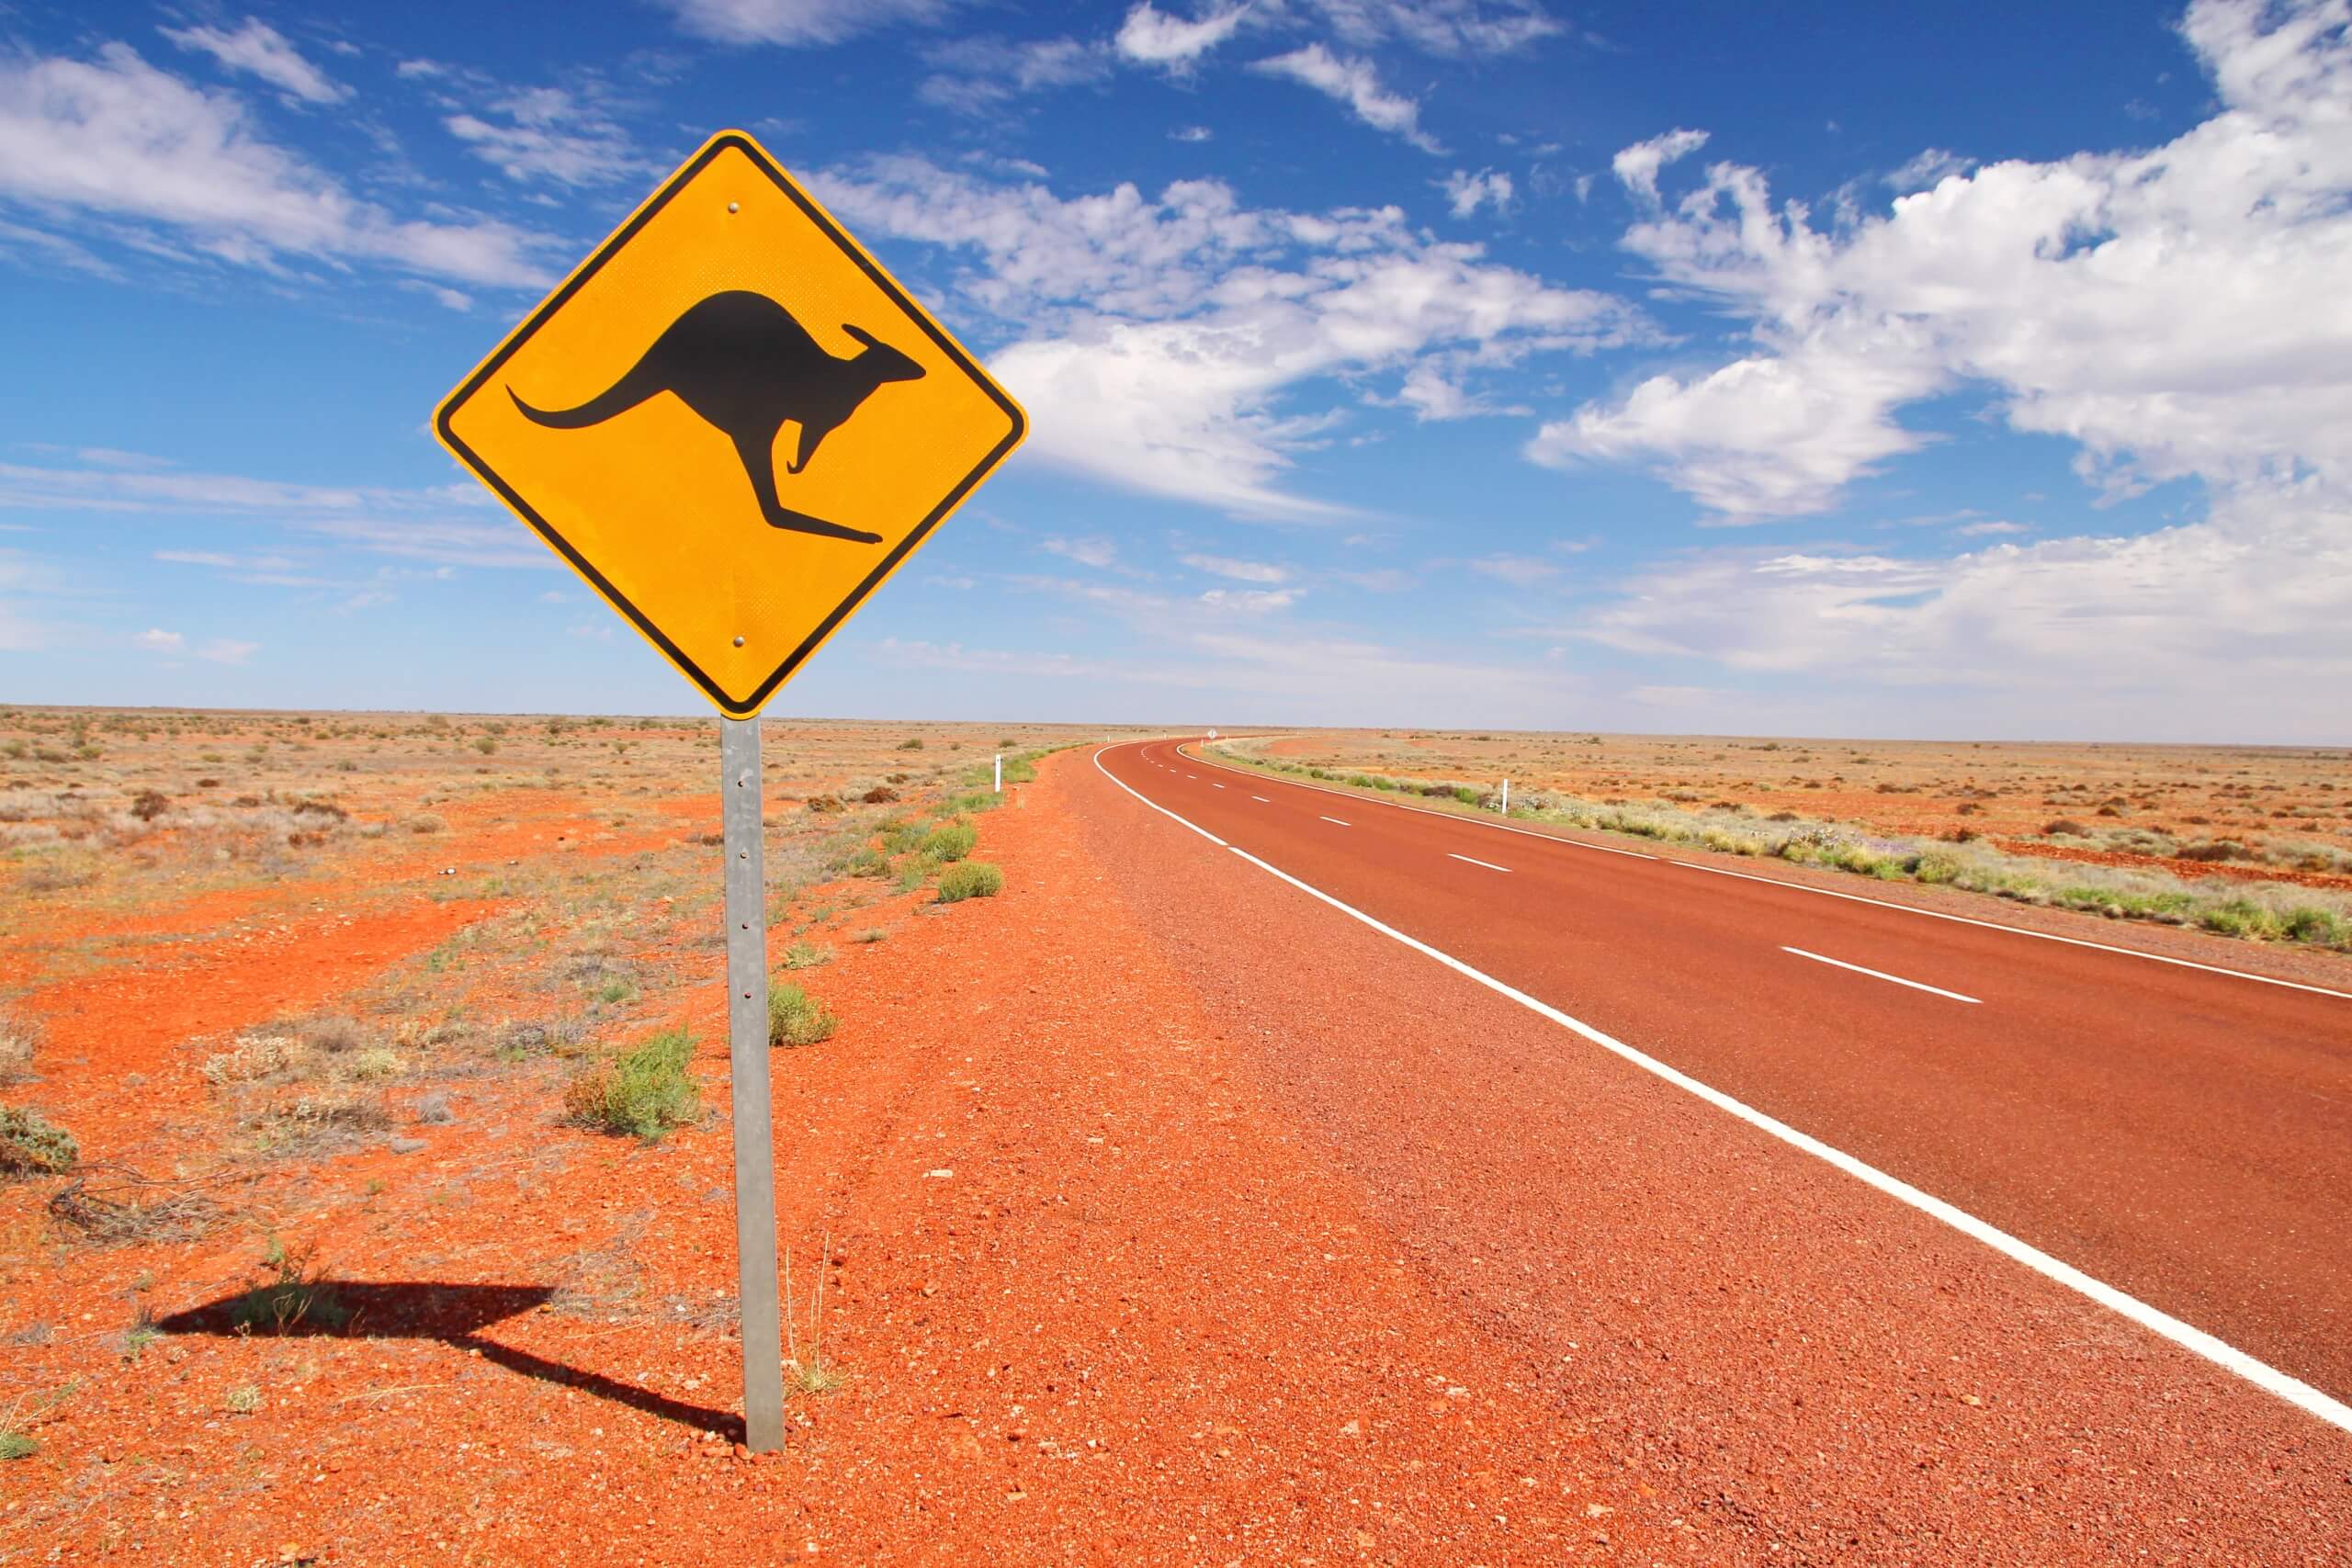 캥거루에 대한 경고 표시와 함께 호주의 끝없는 도로에 이민